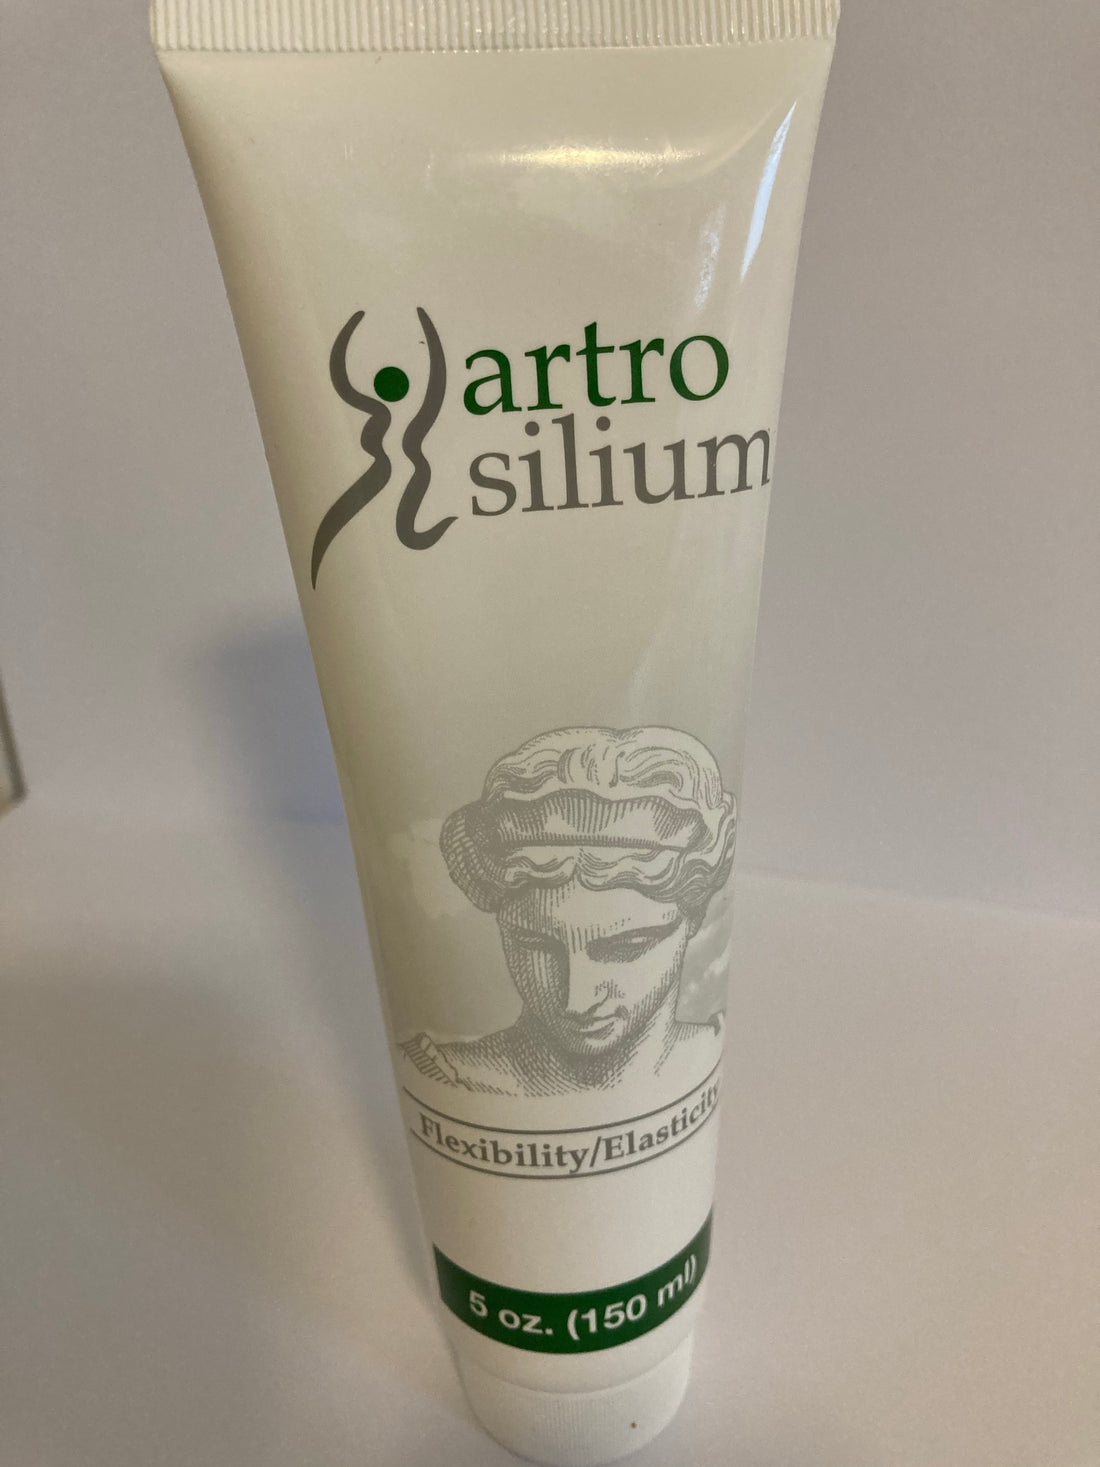 Silium Artro asli